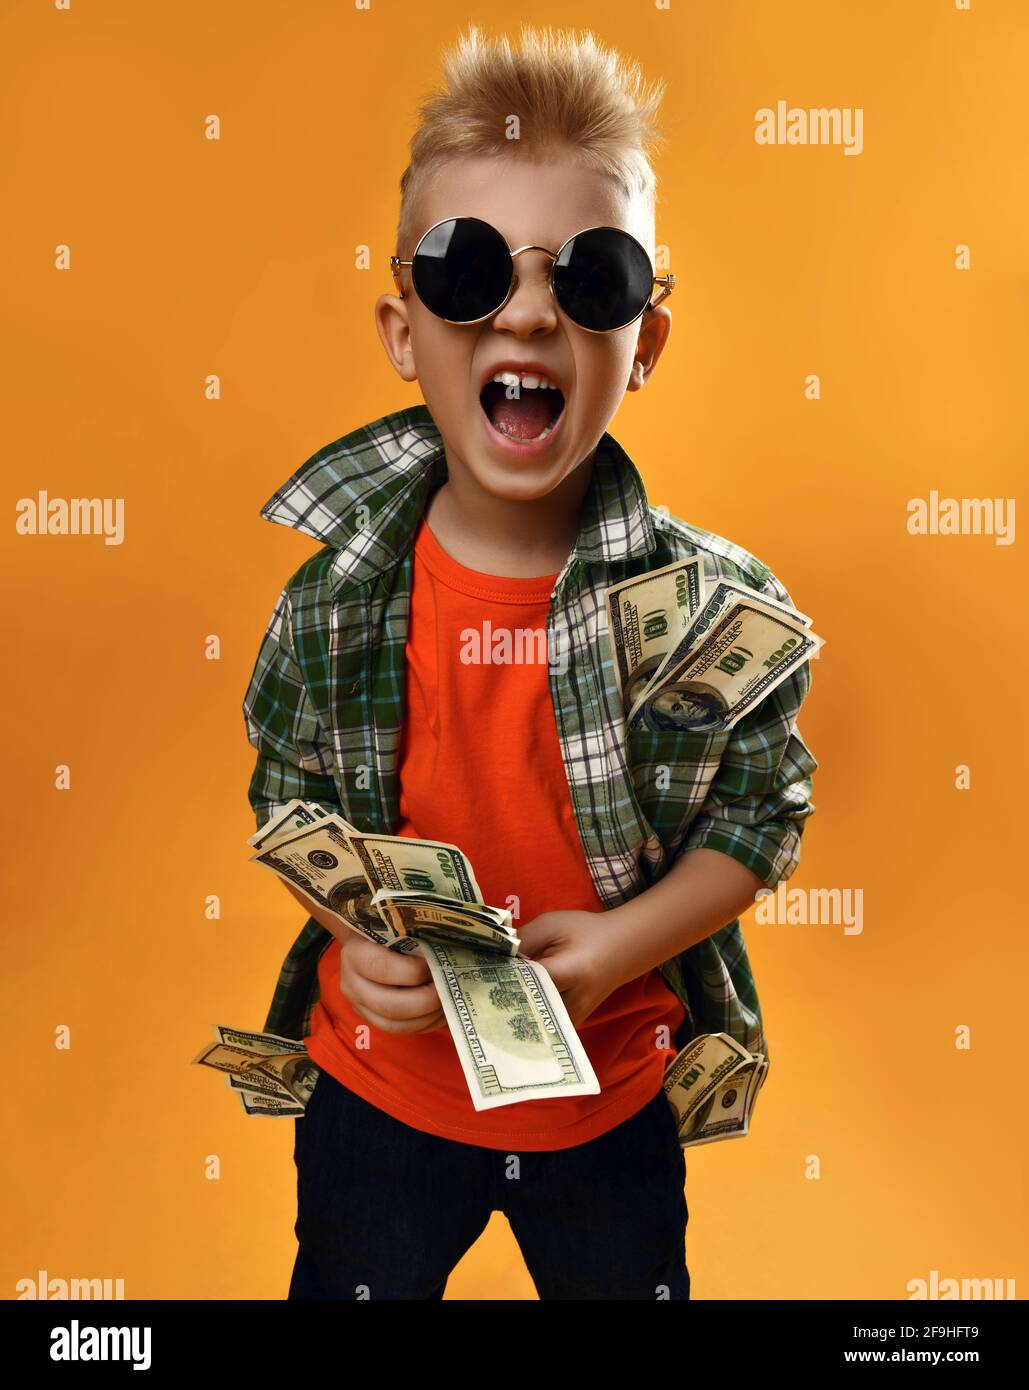 Ragazzo ricco in occhiali da sole rotondi, camicia a quadri e jeans si alza con un pacchetto di soldi in dollari in mani e urla Foto Stock